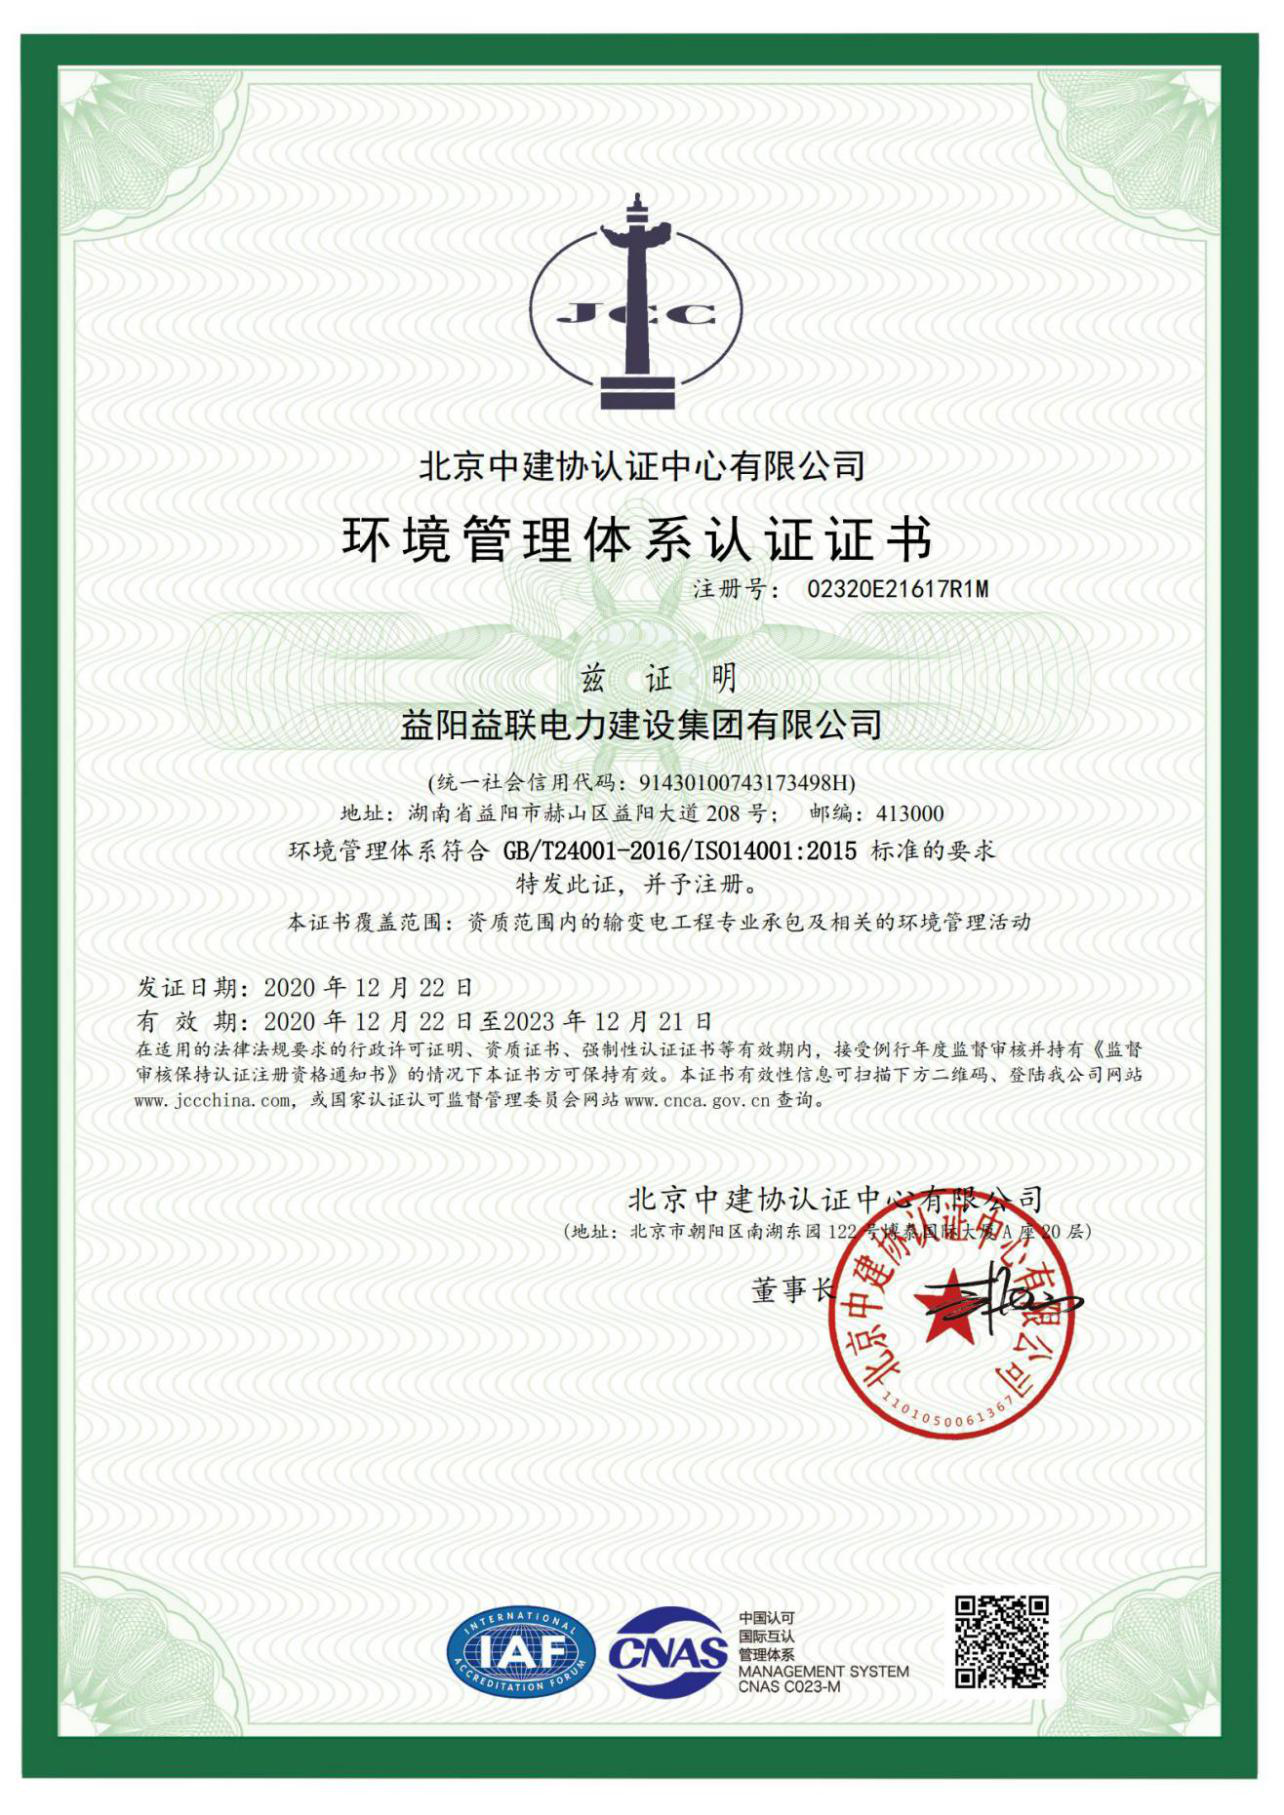 ISO14000認證證書